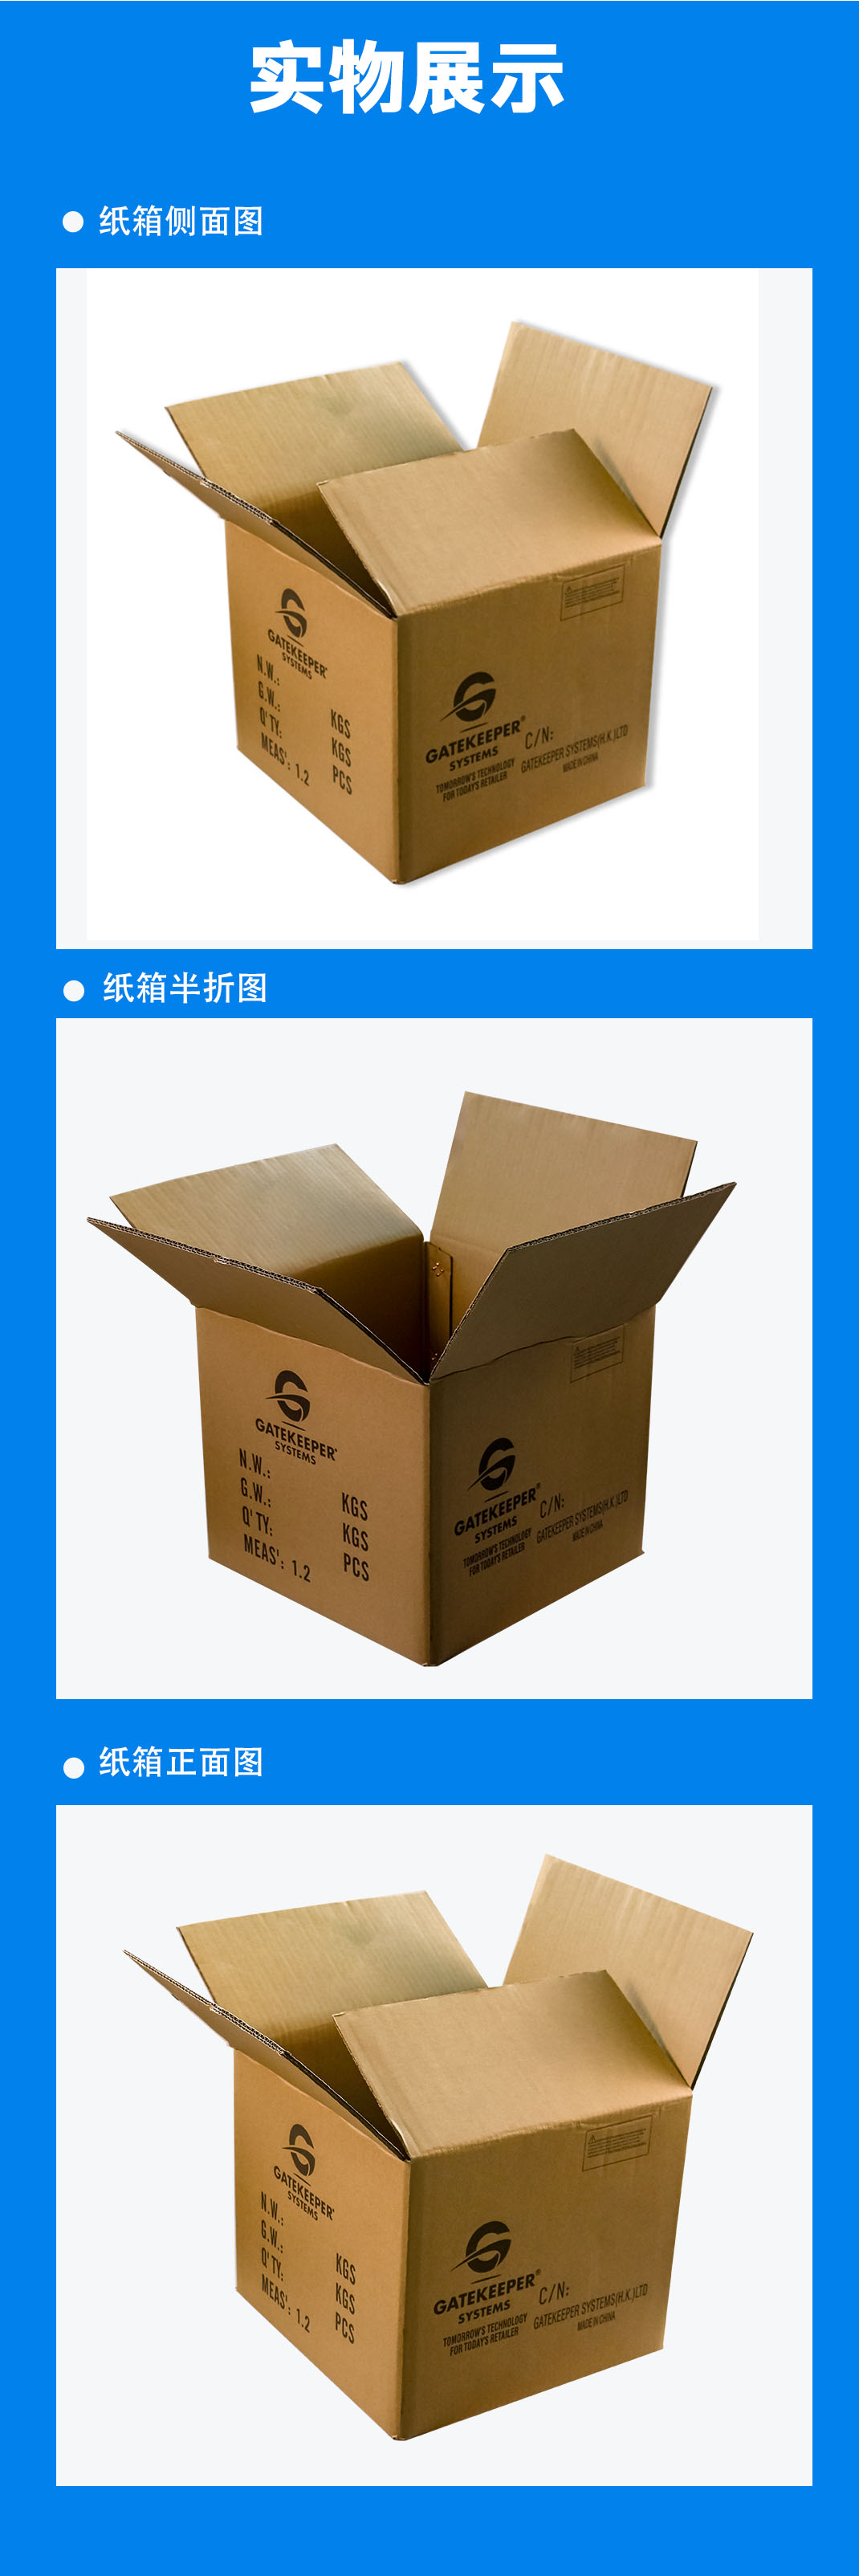 东莞纸箱常用的印刷分类